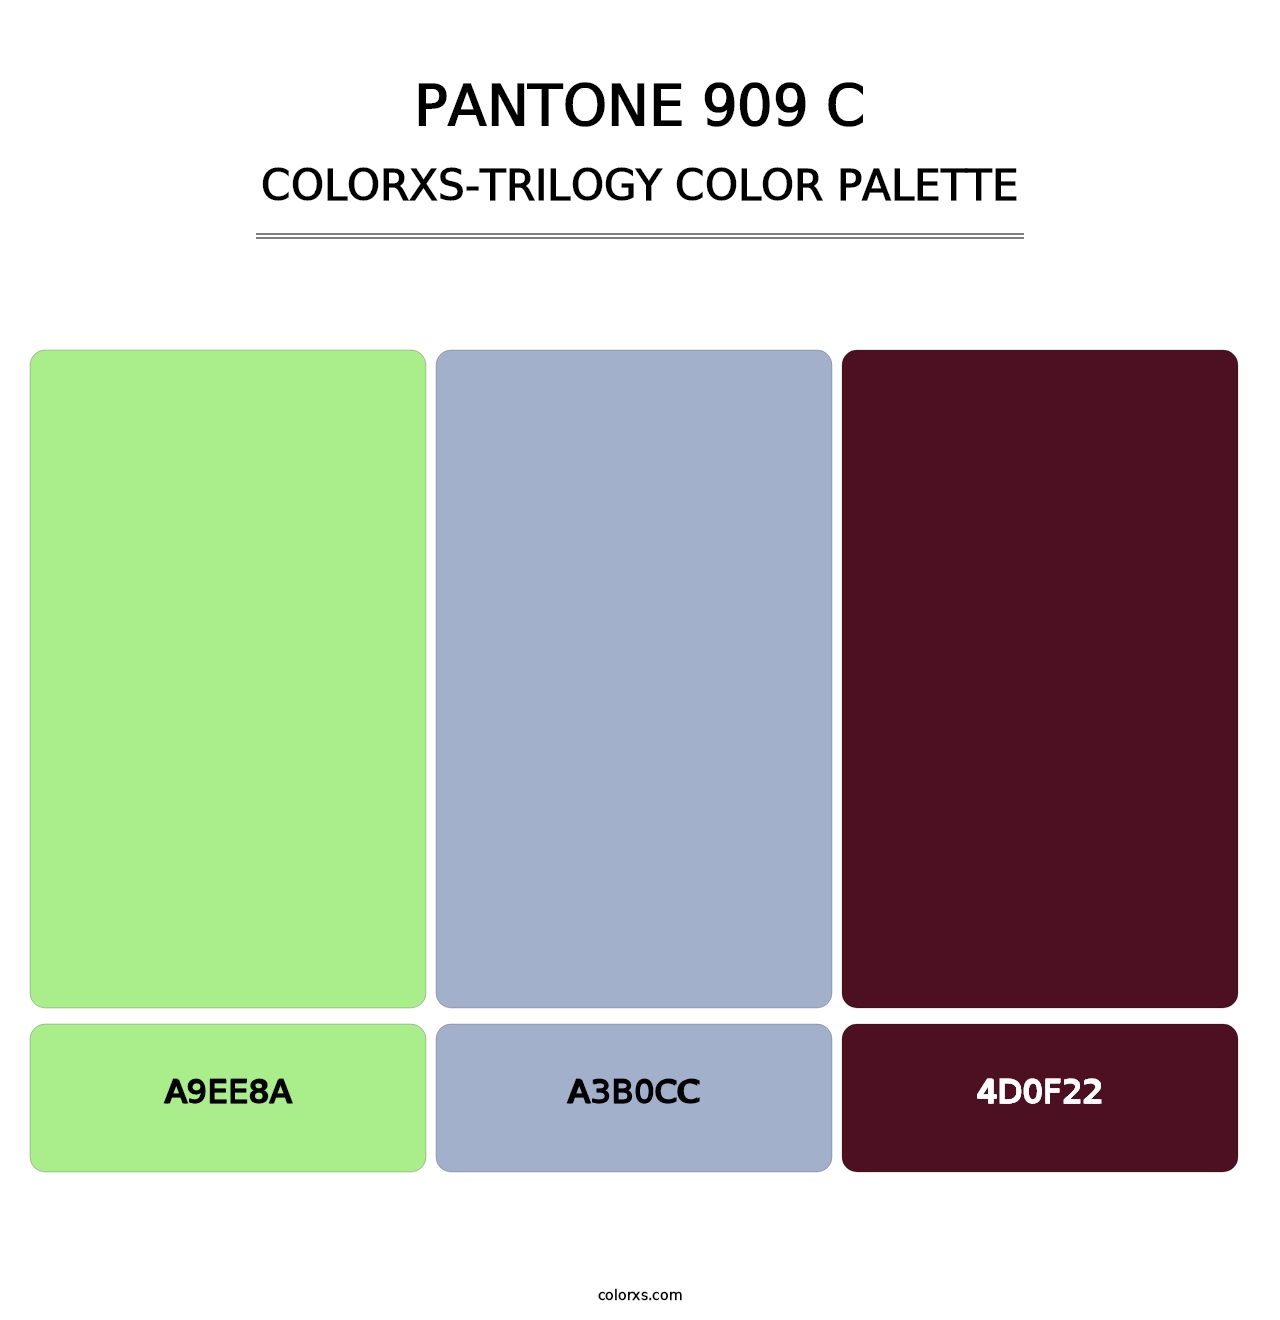 PANTONE 909 C - Colorxs Trilogy Palette